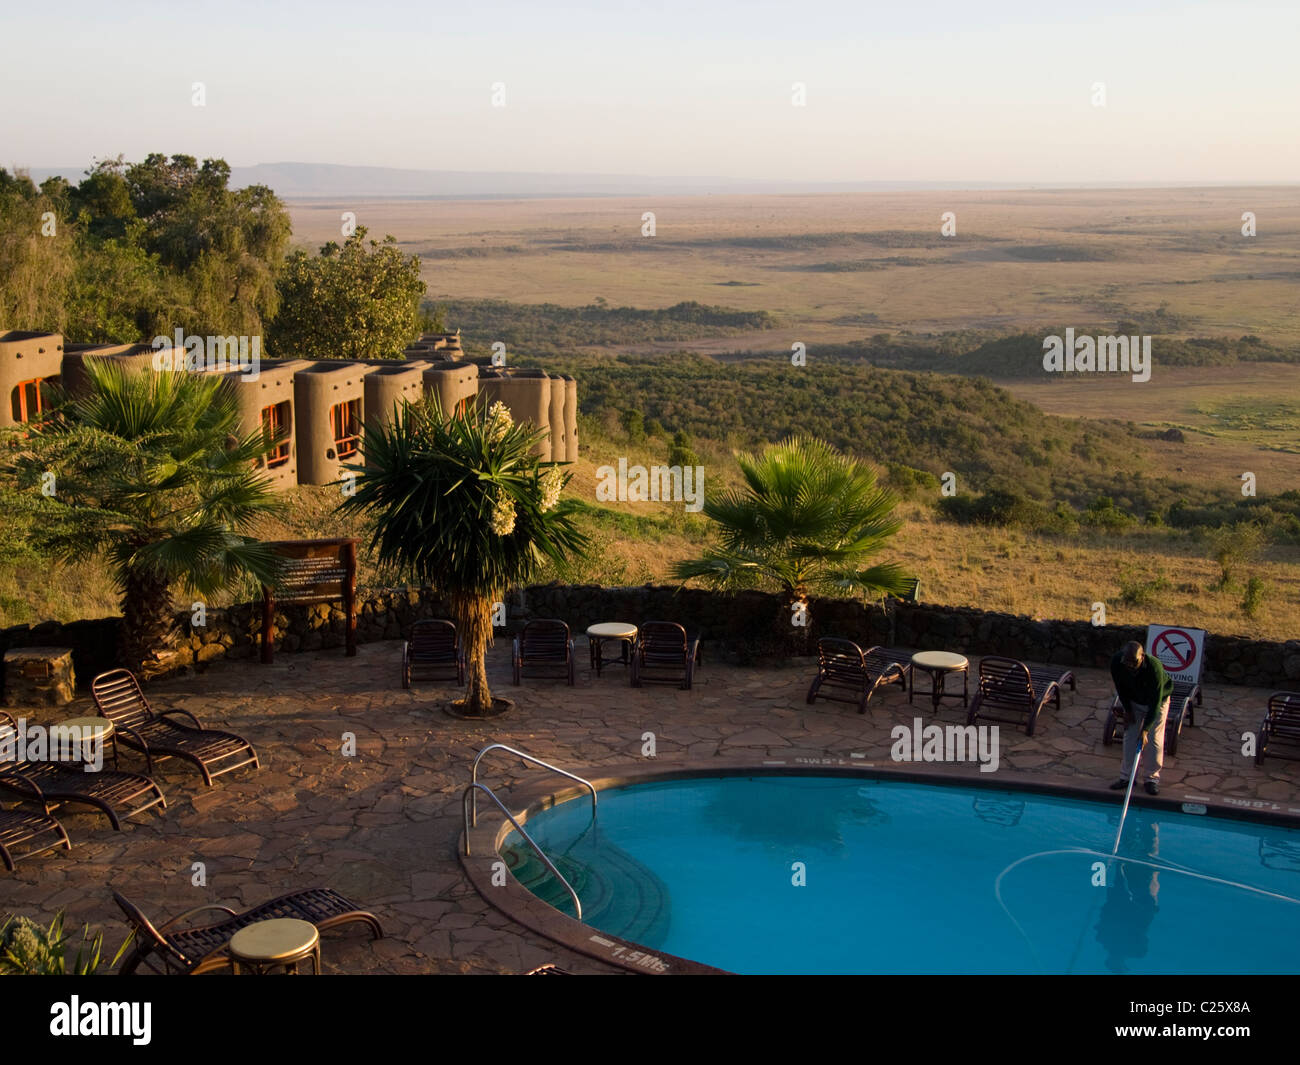 Mara Serena Safari Lodge, Masai Mara, Kenia, Afrika Stockfotografie - Alamy